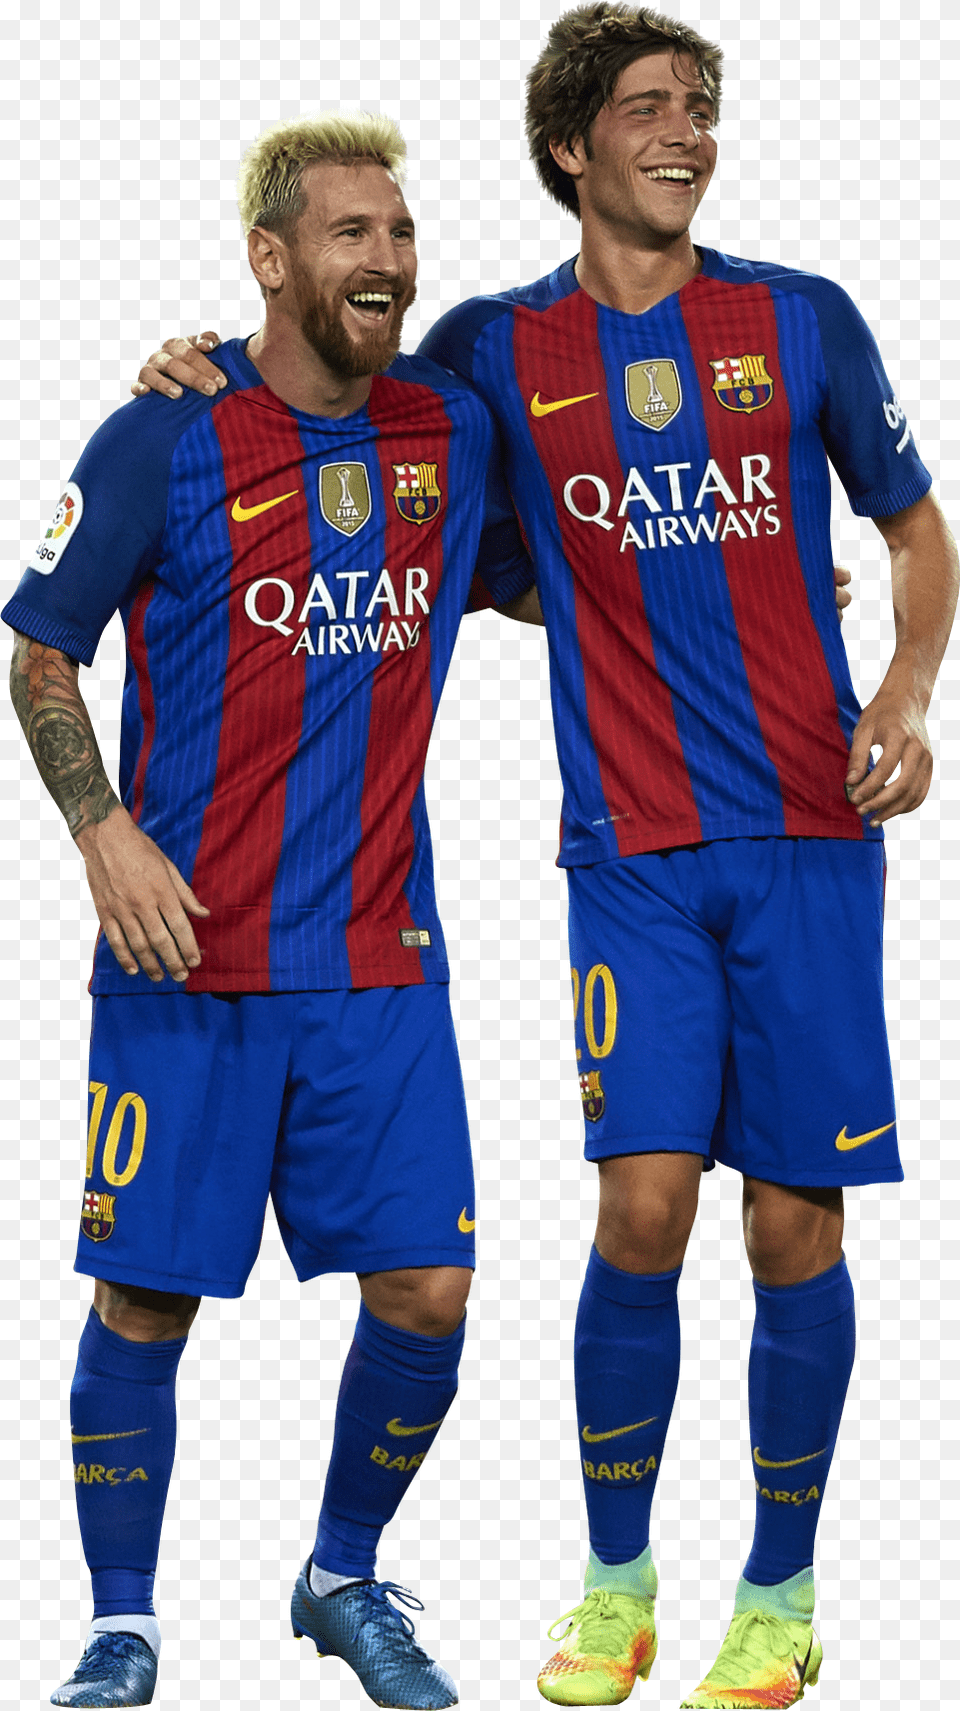 Lionel Messi Amp Sergi Roberto Render Messi Y Sergi Roberto, Clothing, Shirt, Adult, Shorts Free Png